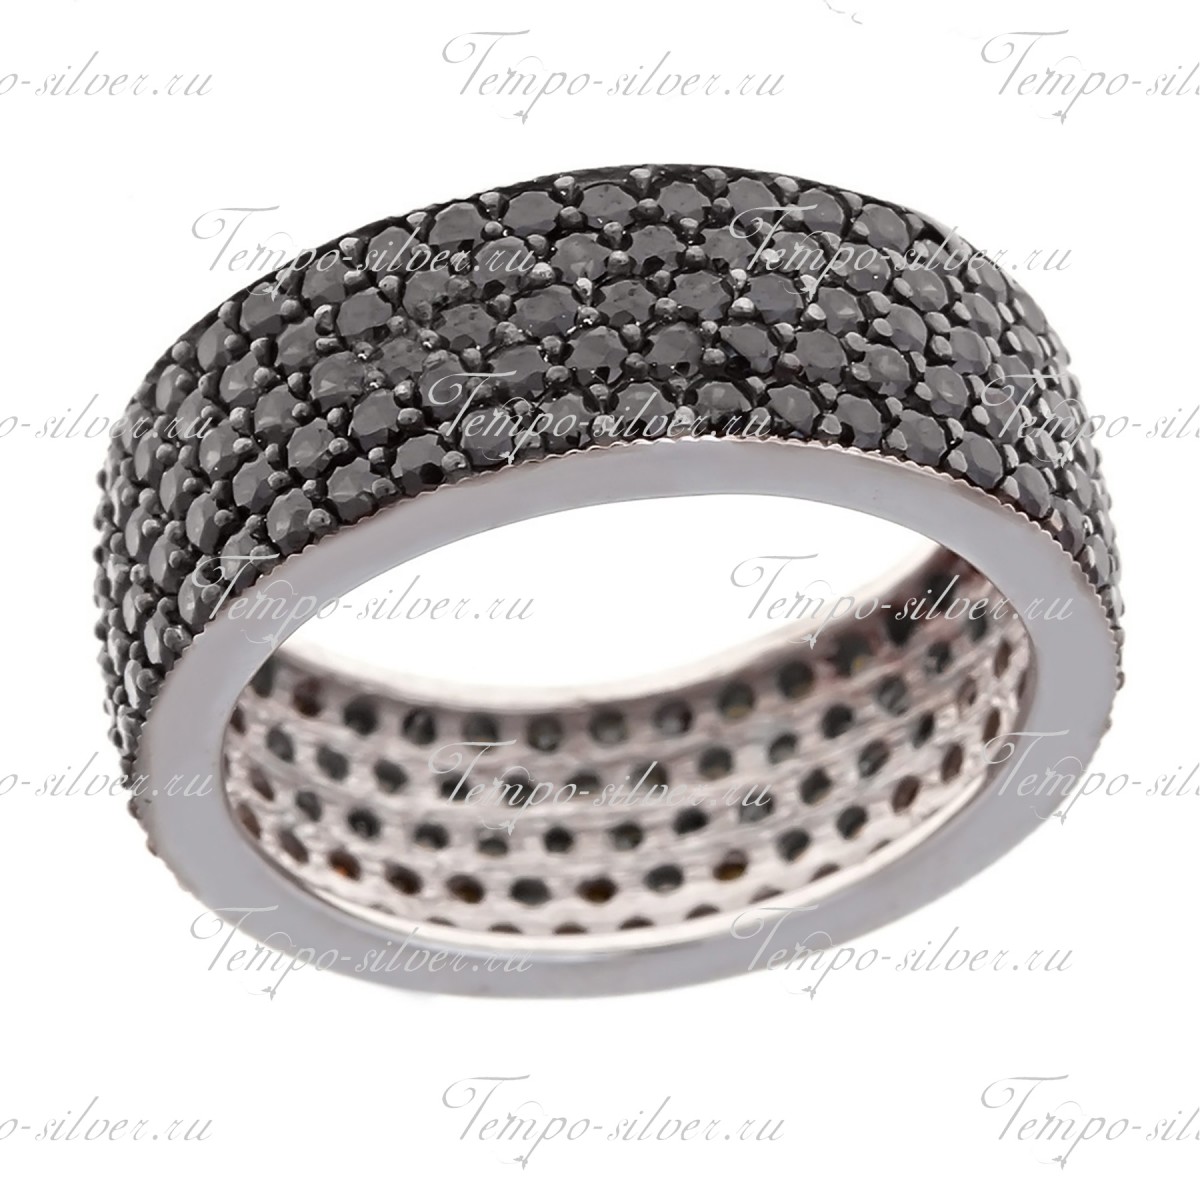 Кольцо из серебра обручальной формы, украшенное пятью рядами черных камней цена